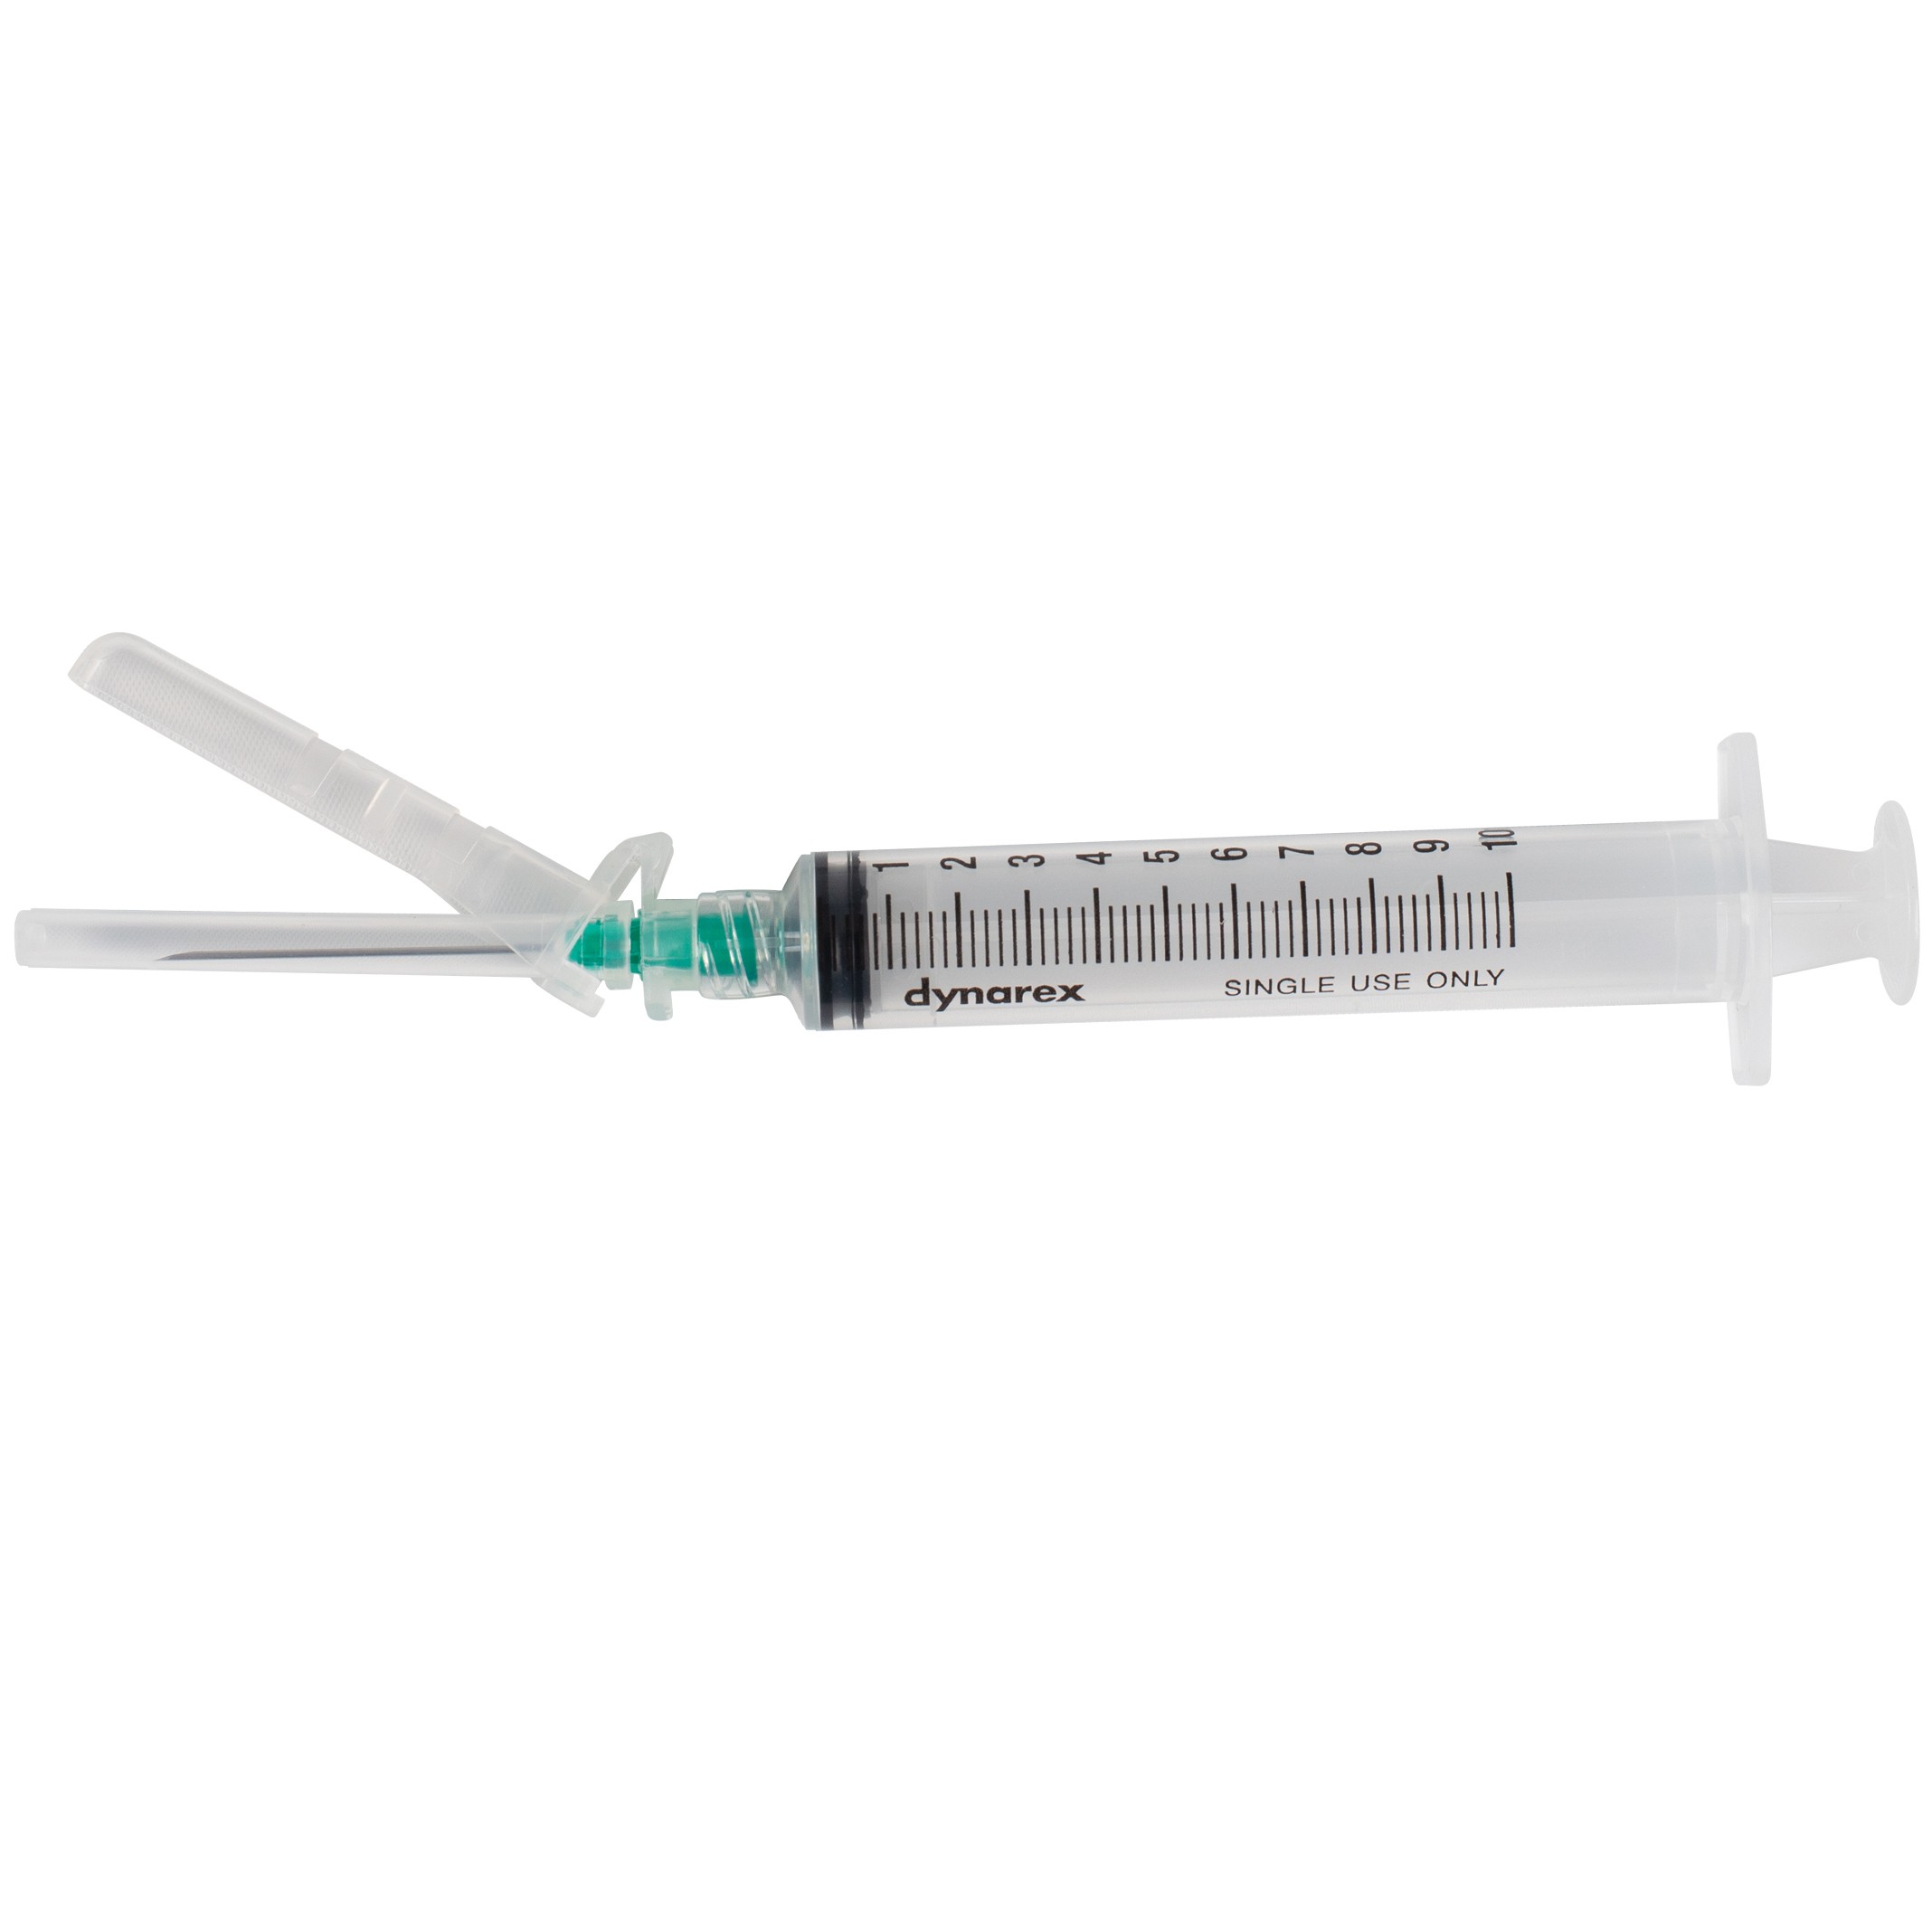 SecureSafe™ Syringe with Safety Needle - 3cc - 25G, 5/8" needle